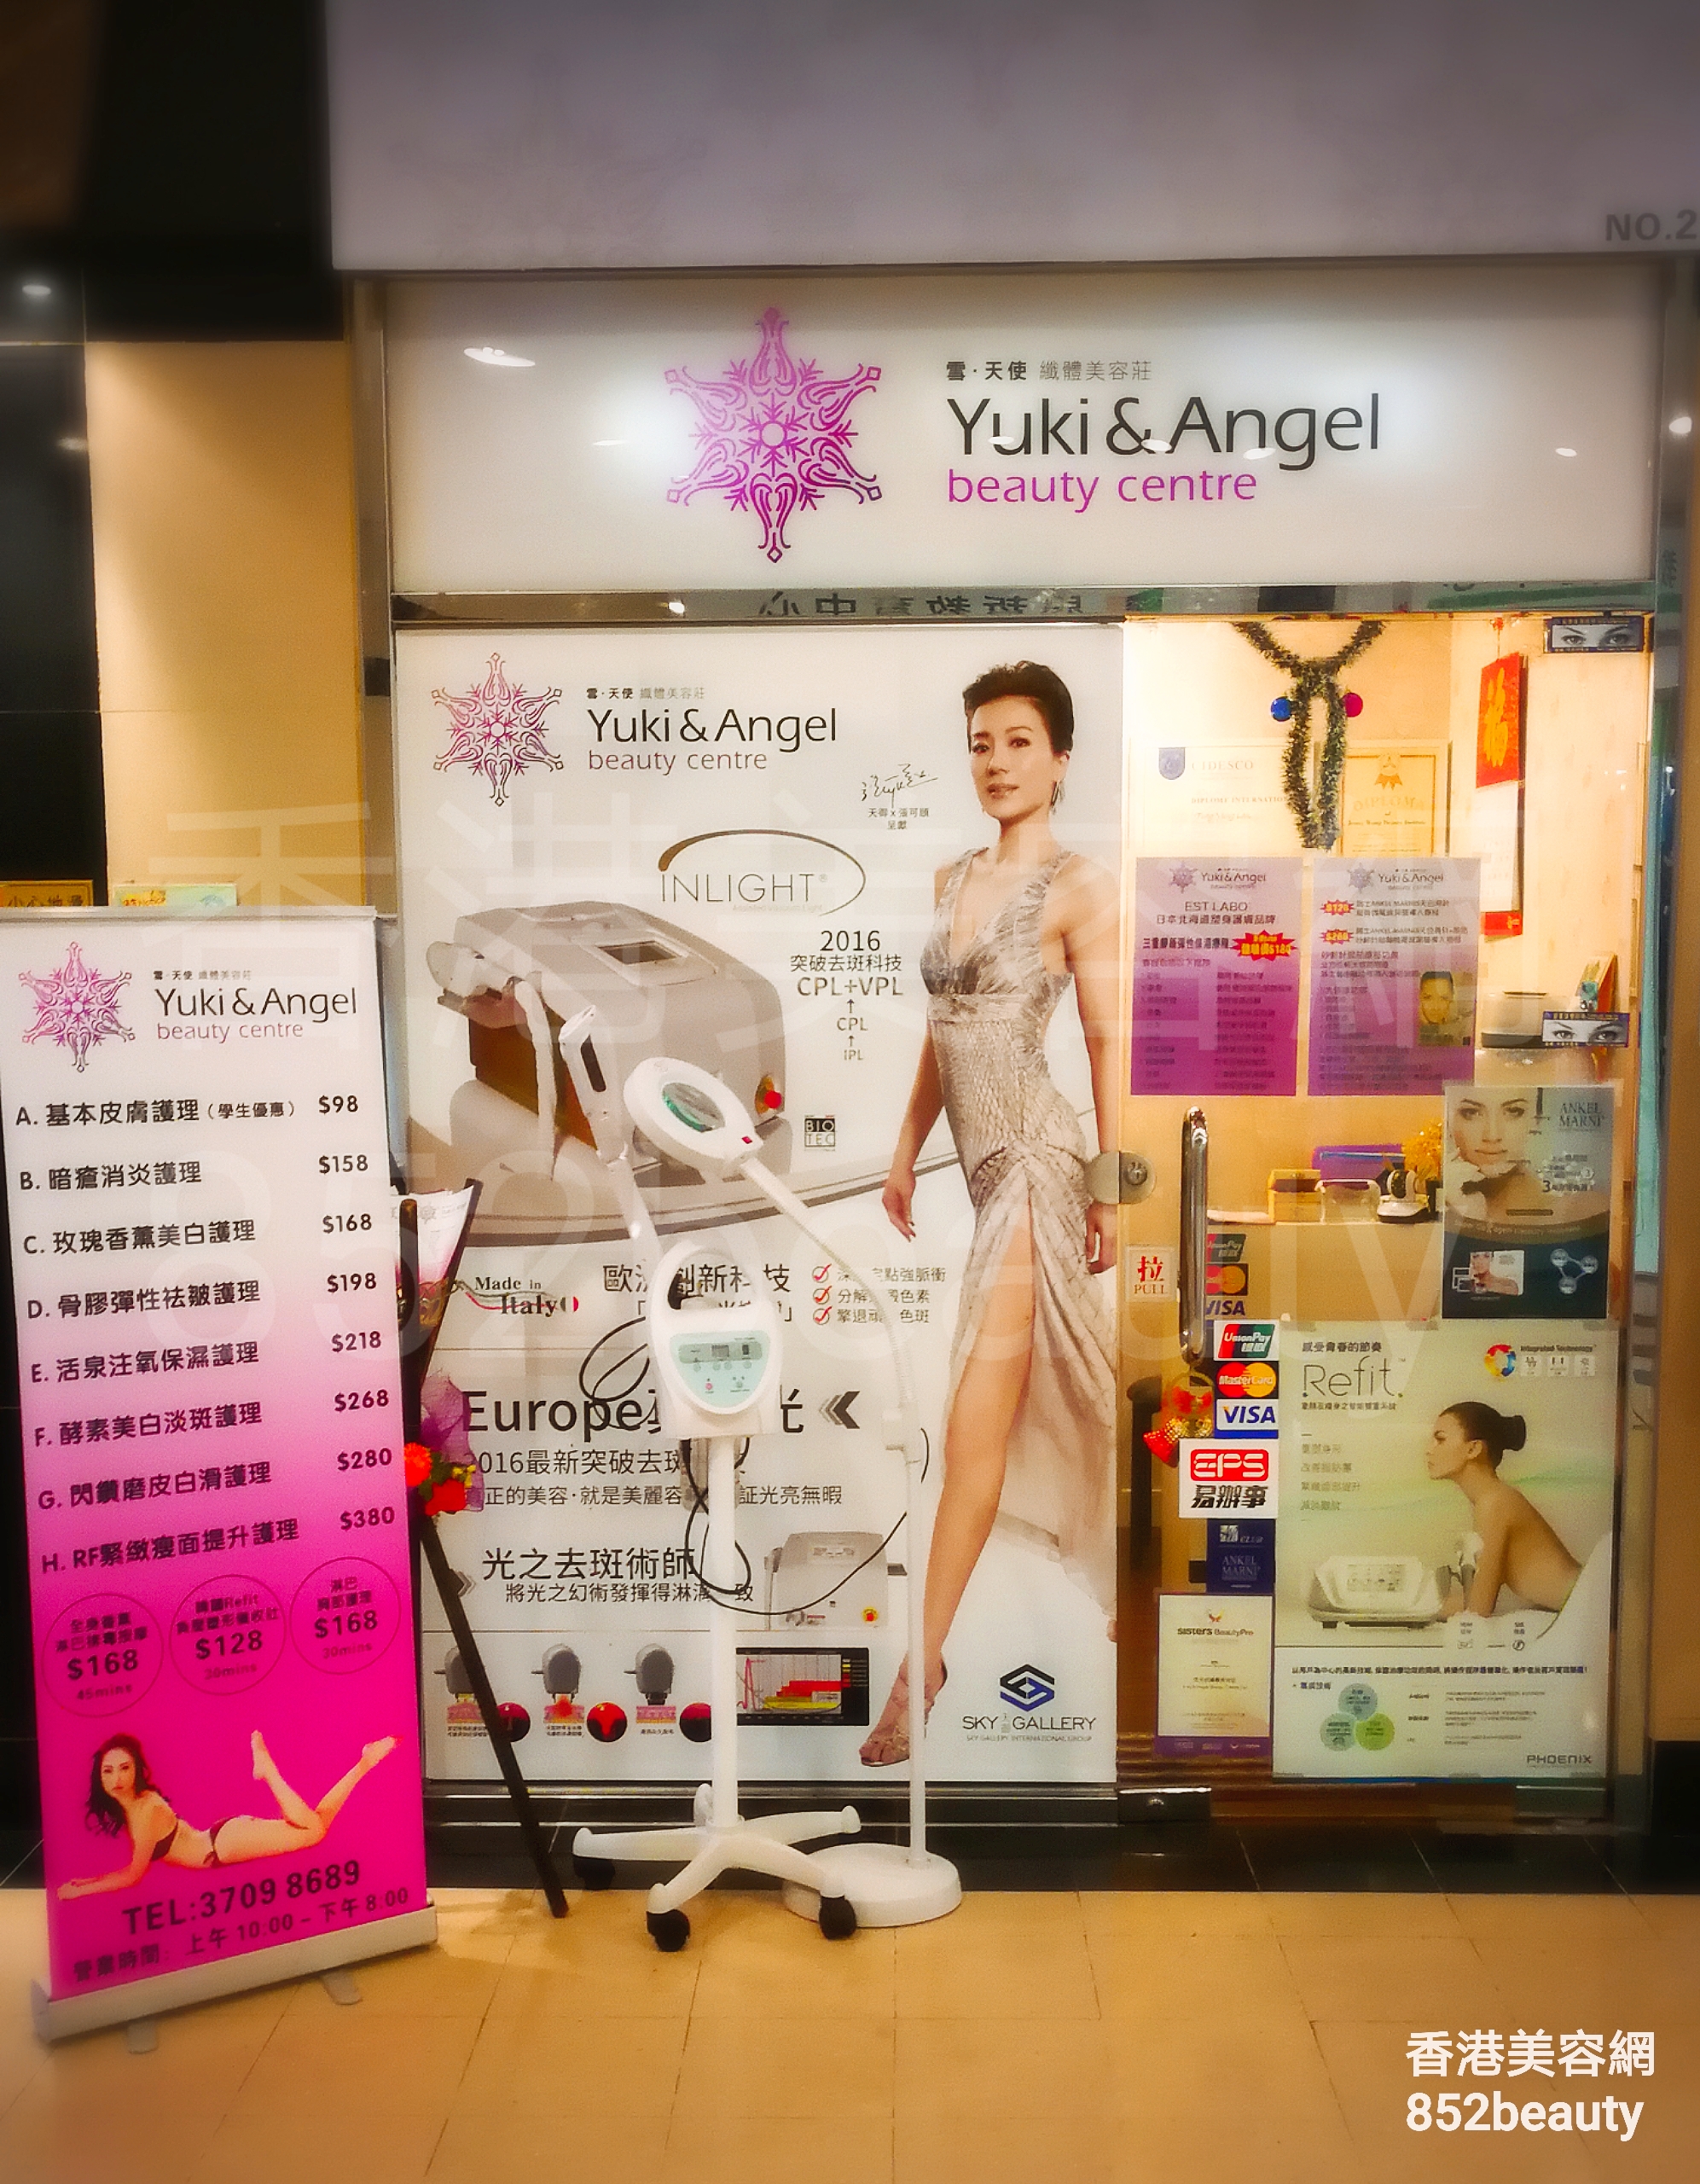 脫毛: Yuki & Angel beauty centre